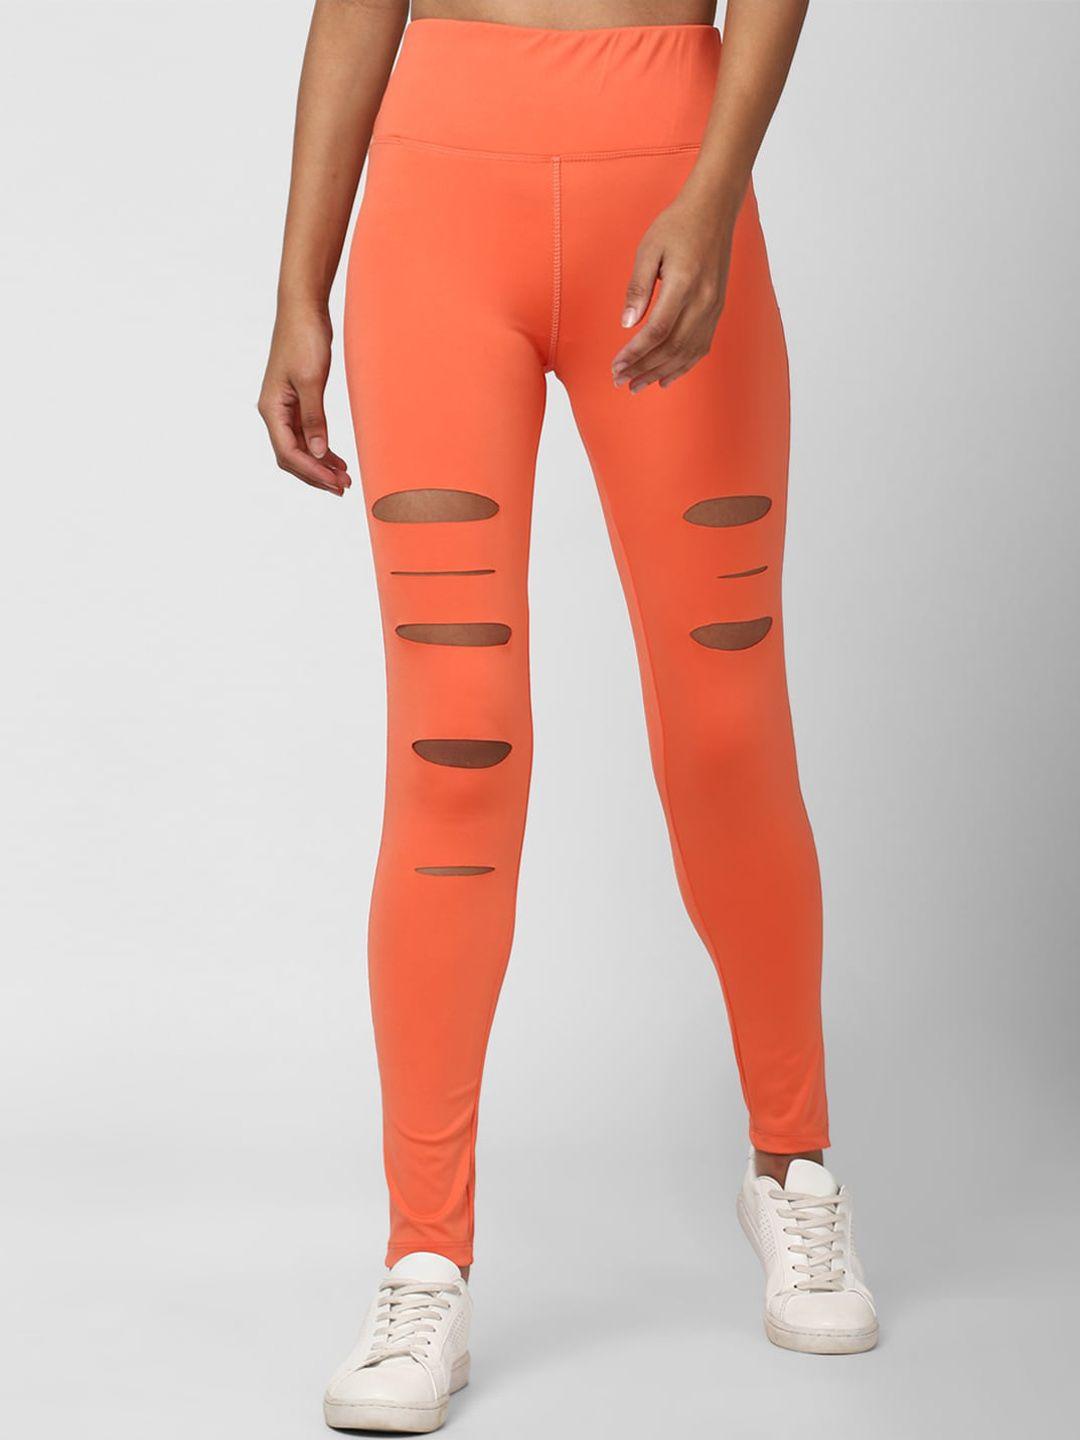 forever-21-women-orange-cut-out-ankle-length-leggings